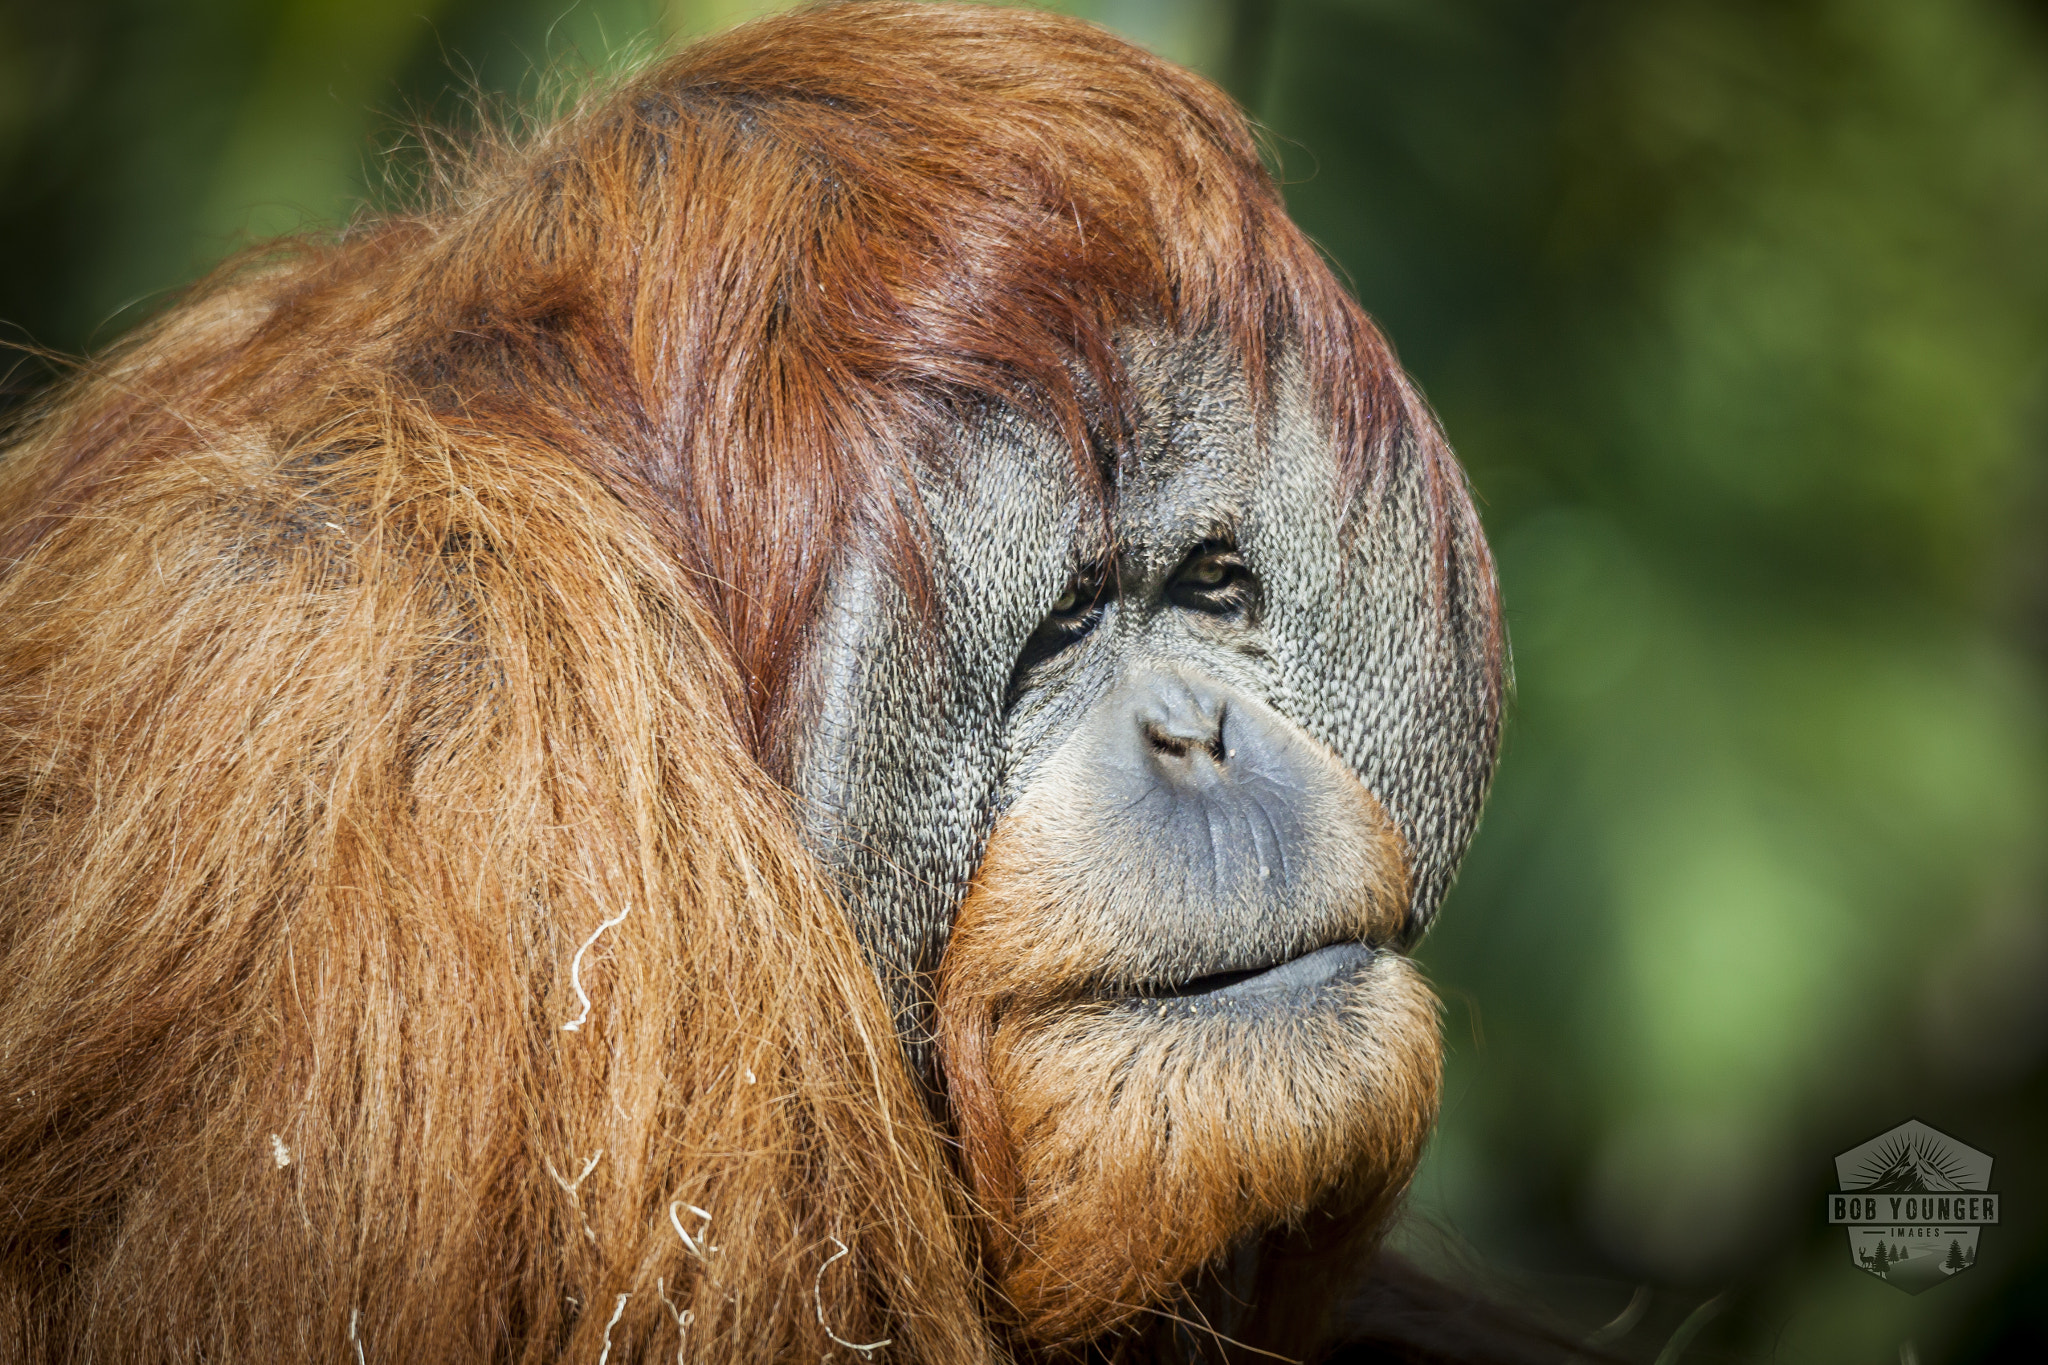 Canon EOS 5D Mark II sample photo. An orangutan at the san diego zoo enjoys the morning sun photography